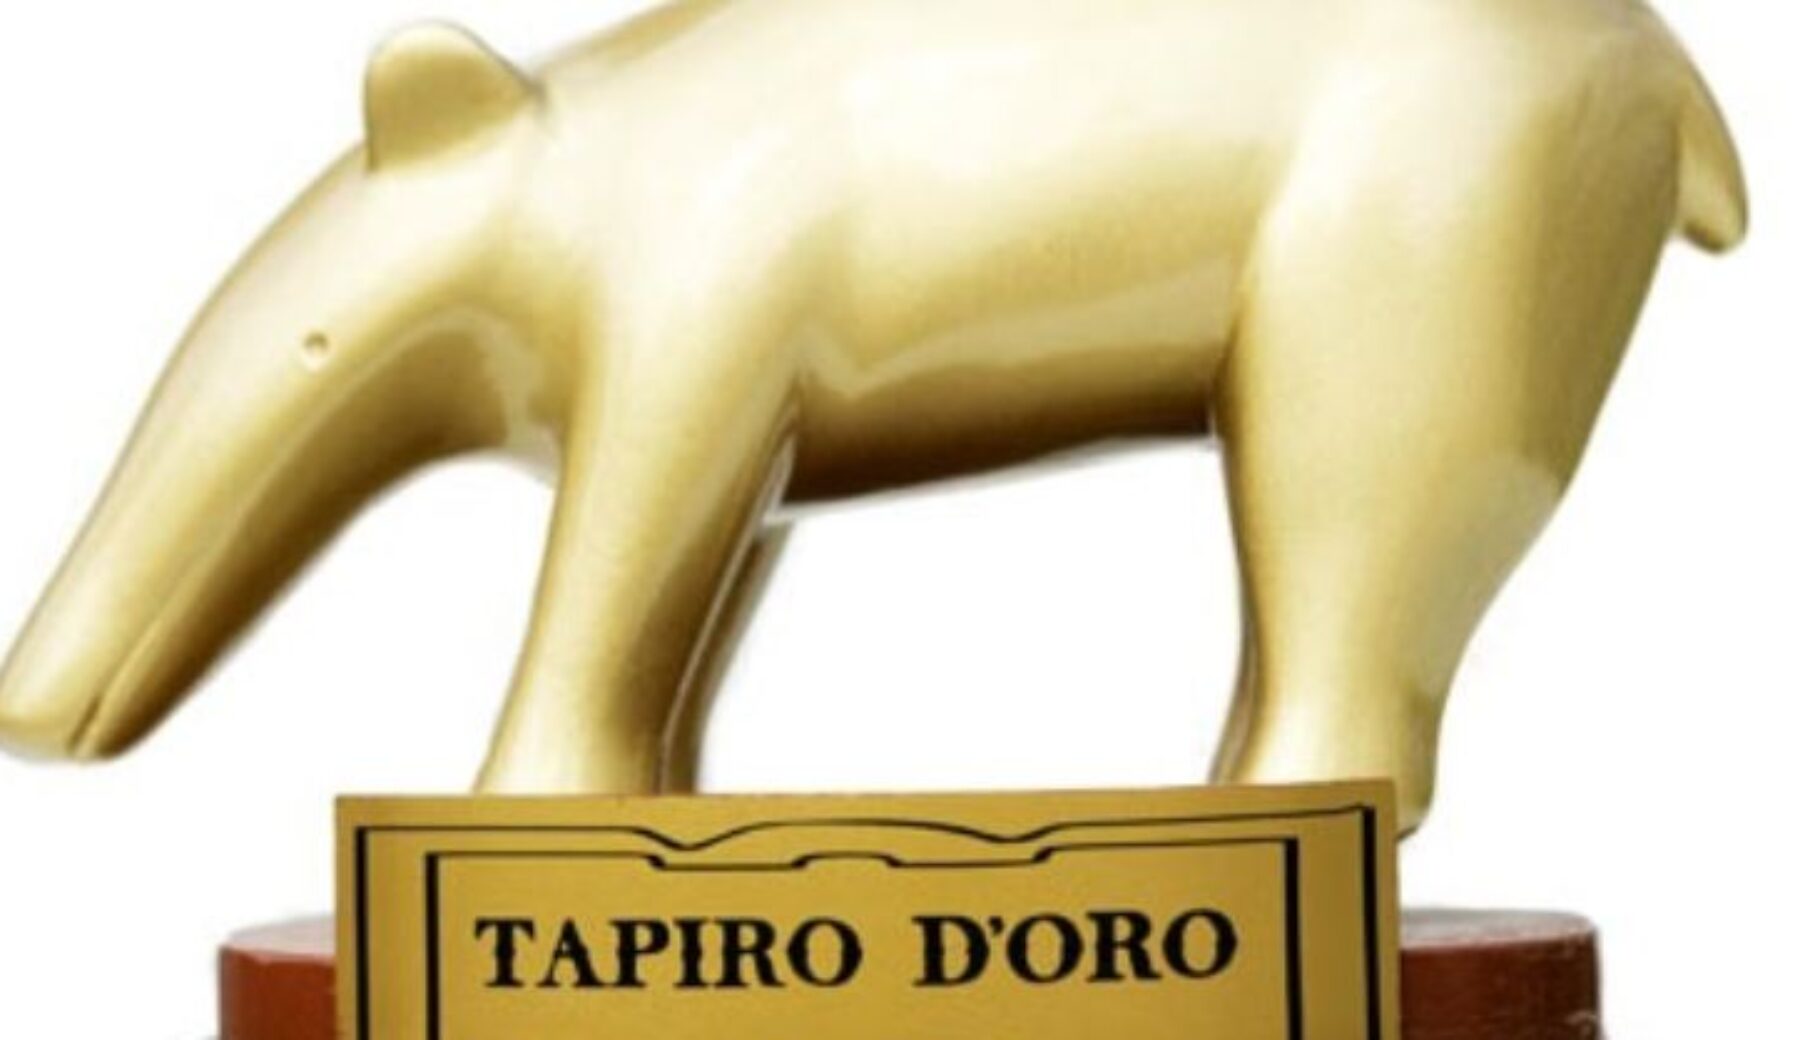 Giornata mondiale del Tapiro, Striscia festeggia con le curiosità sul Tapiro d’oro